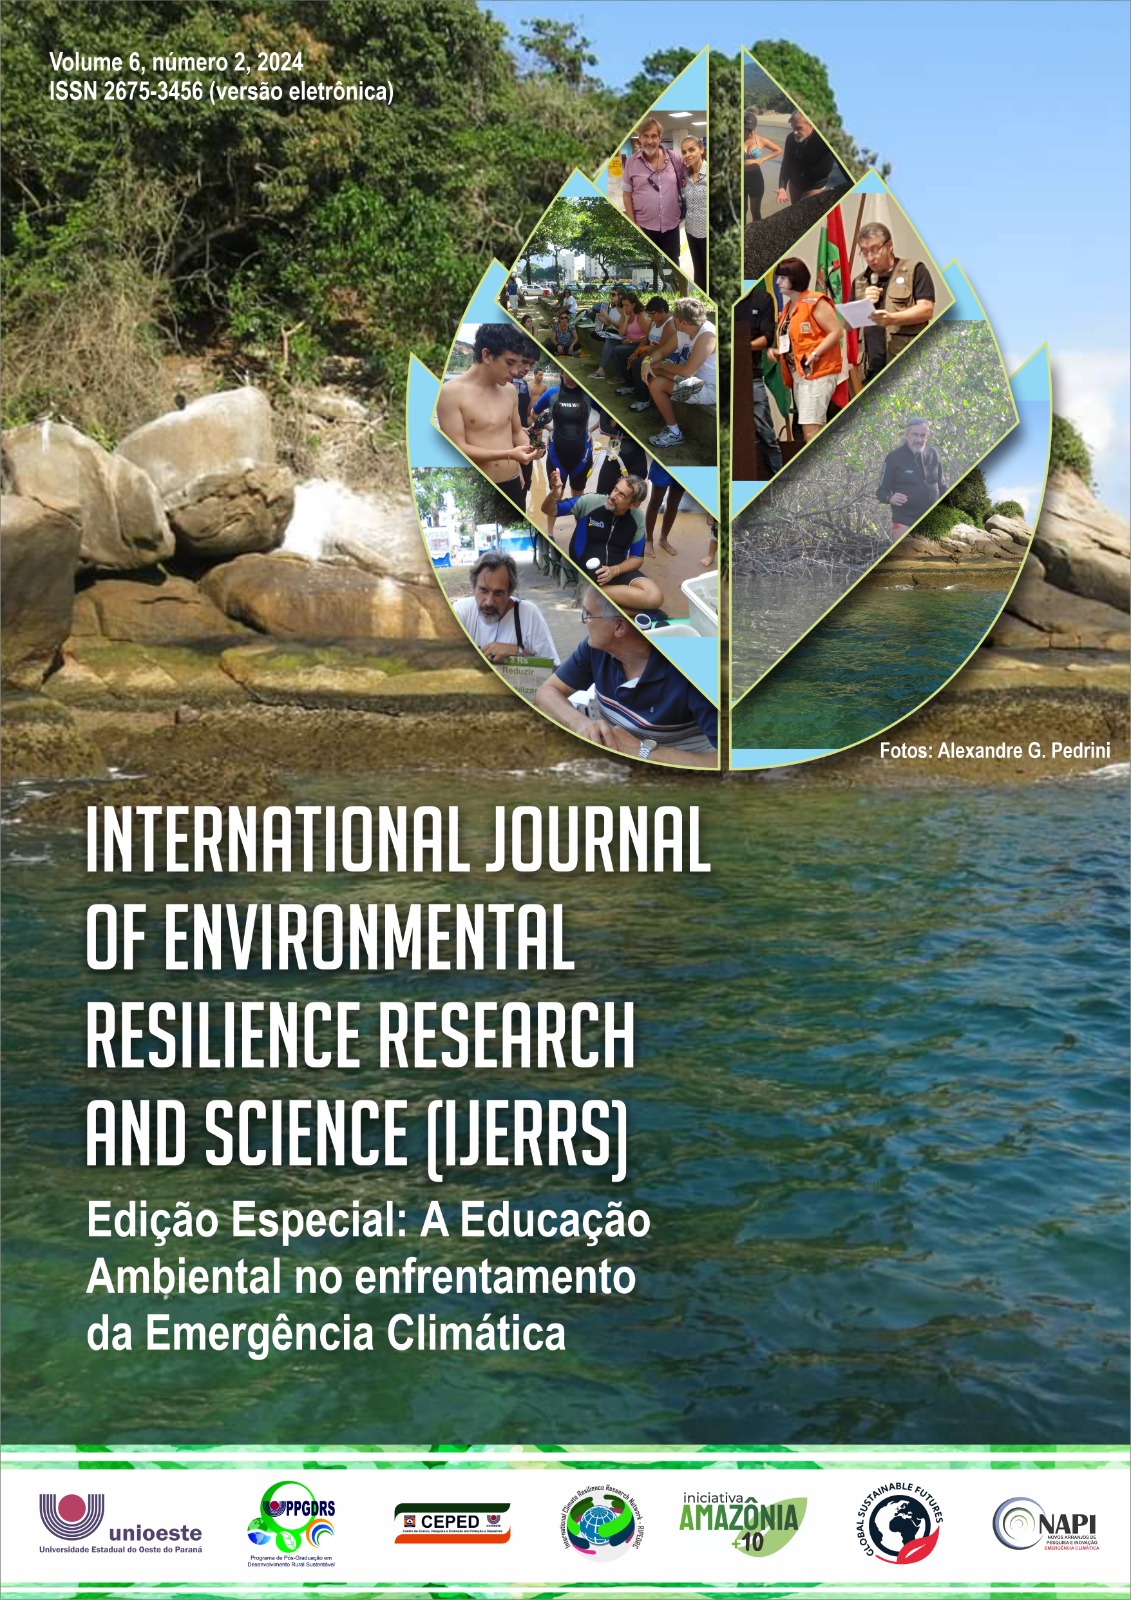 					Ver Vol. 6 Núm. 2 (2024): EDIÇÃO ESPECIAL - Educação Ambiental frente à Emergência Climática
				